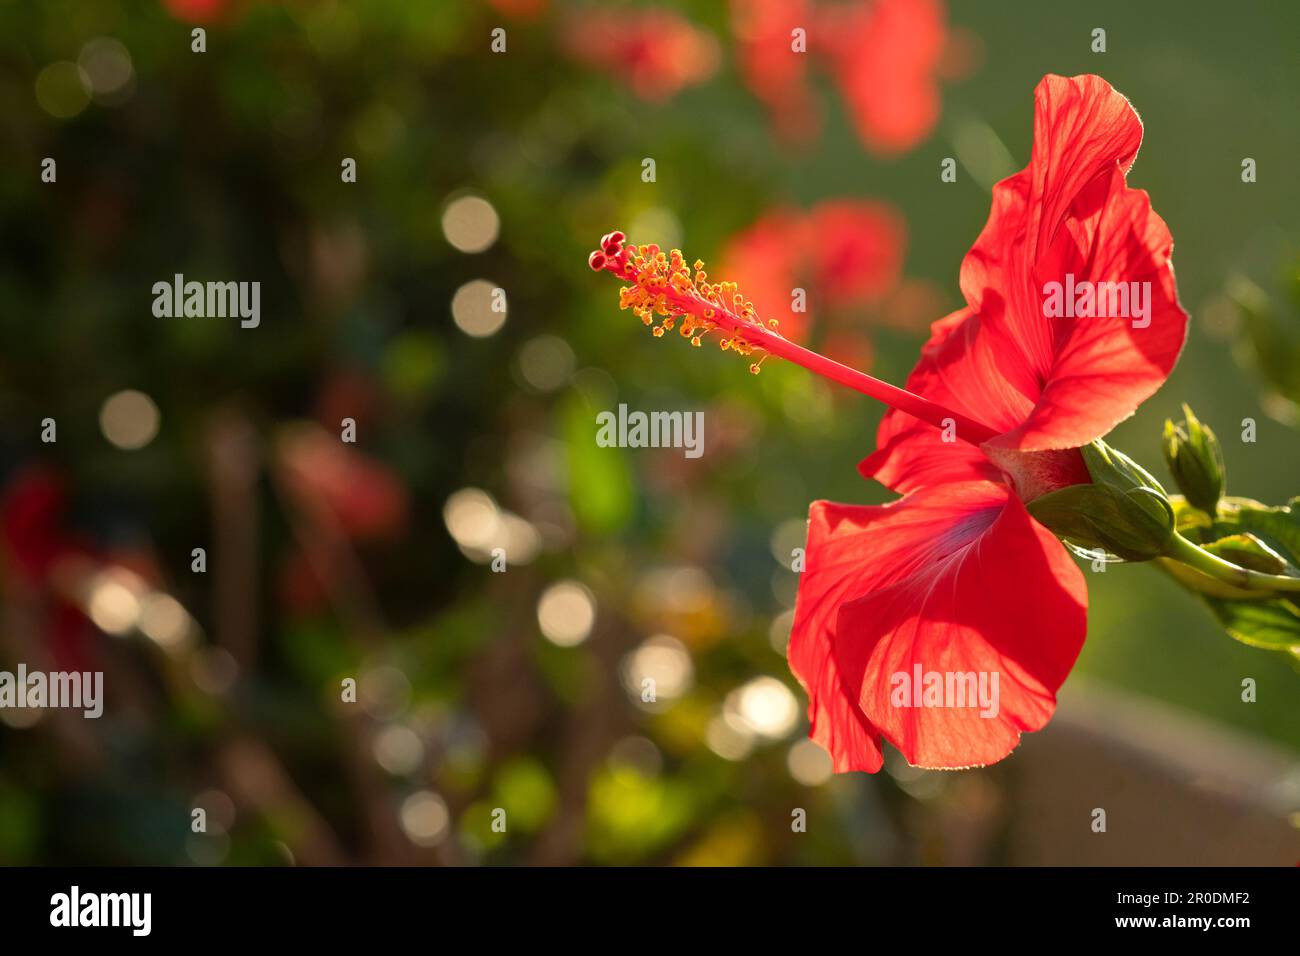 Eine rote Hibiscus rosa sinensis, eine in tropischen und subtropischen Gebieten weit verbreitete Zierpflanze. Nahaufnahme einer einzelnen Blume mit Hintergrundbeleuchtung Stockfoto